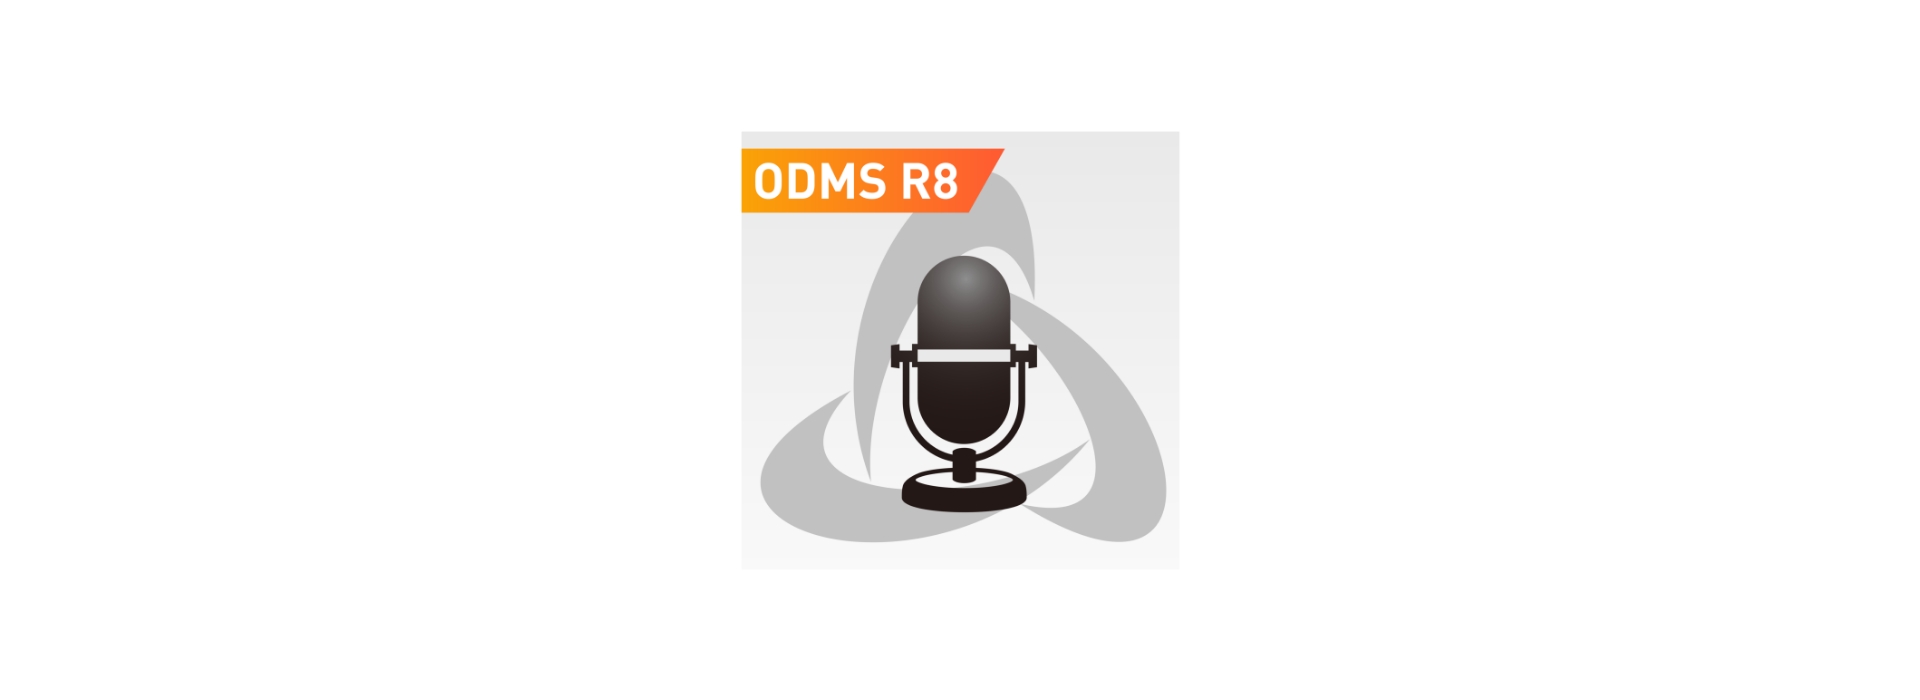 OM-SYSTEM ODMS-R8 DIKTAT-STUTTGART 002